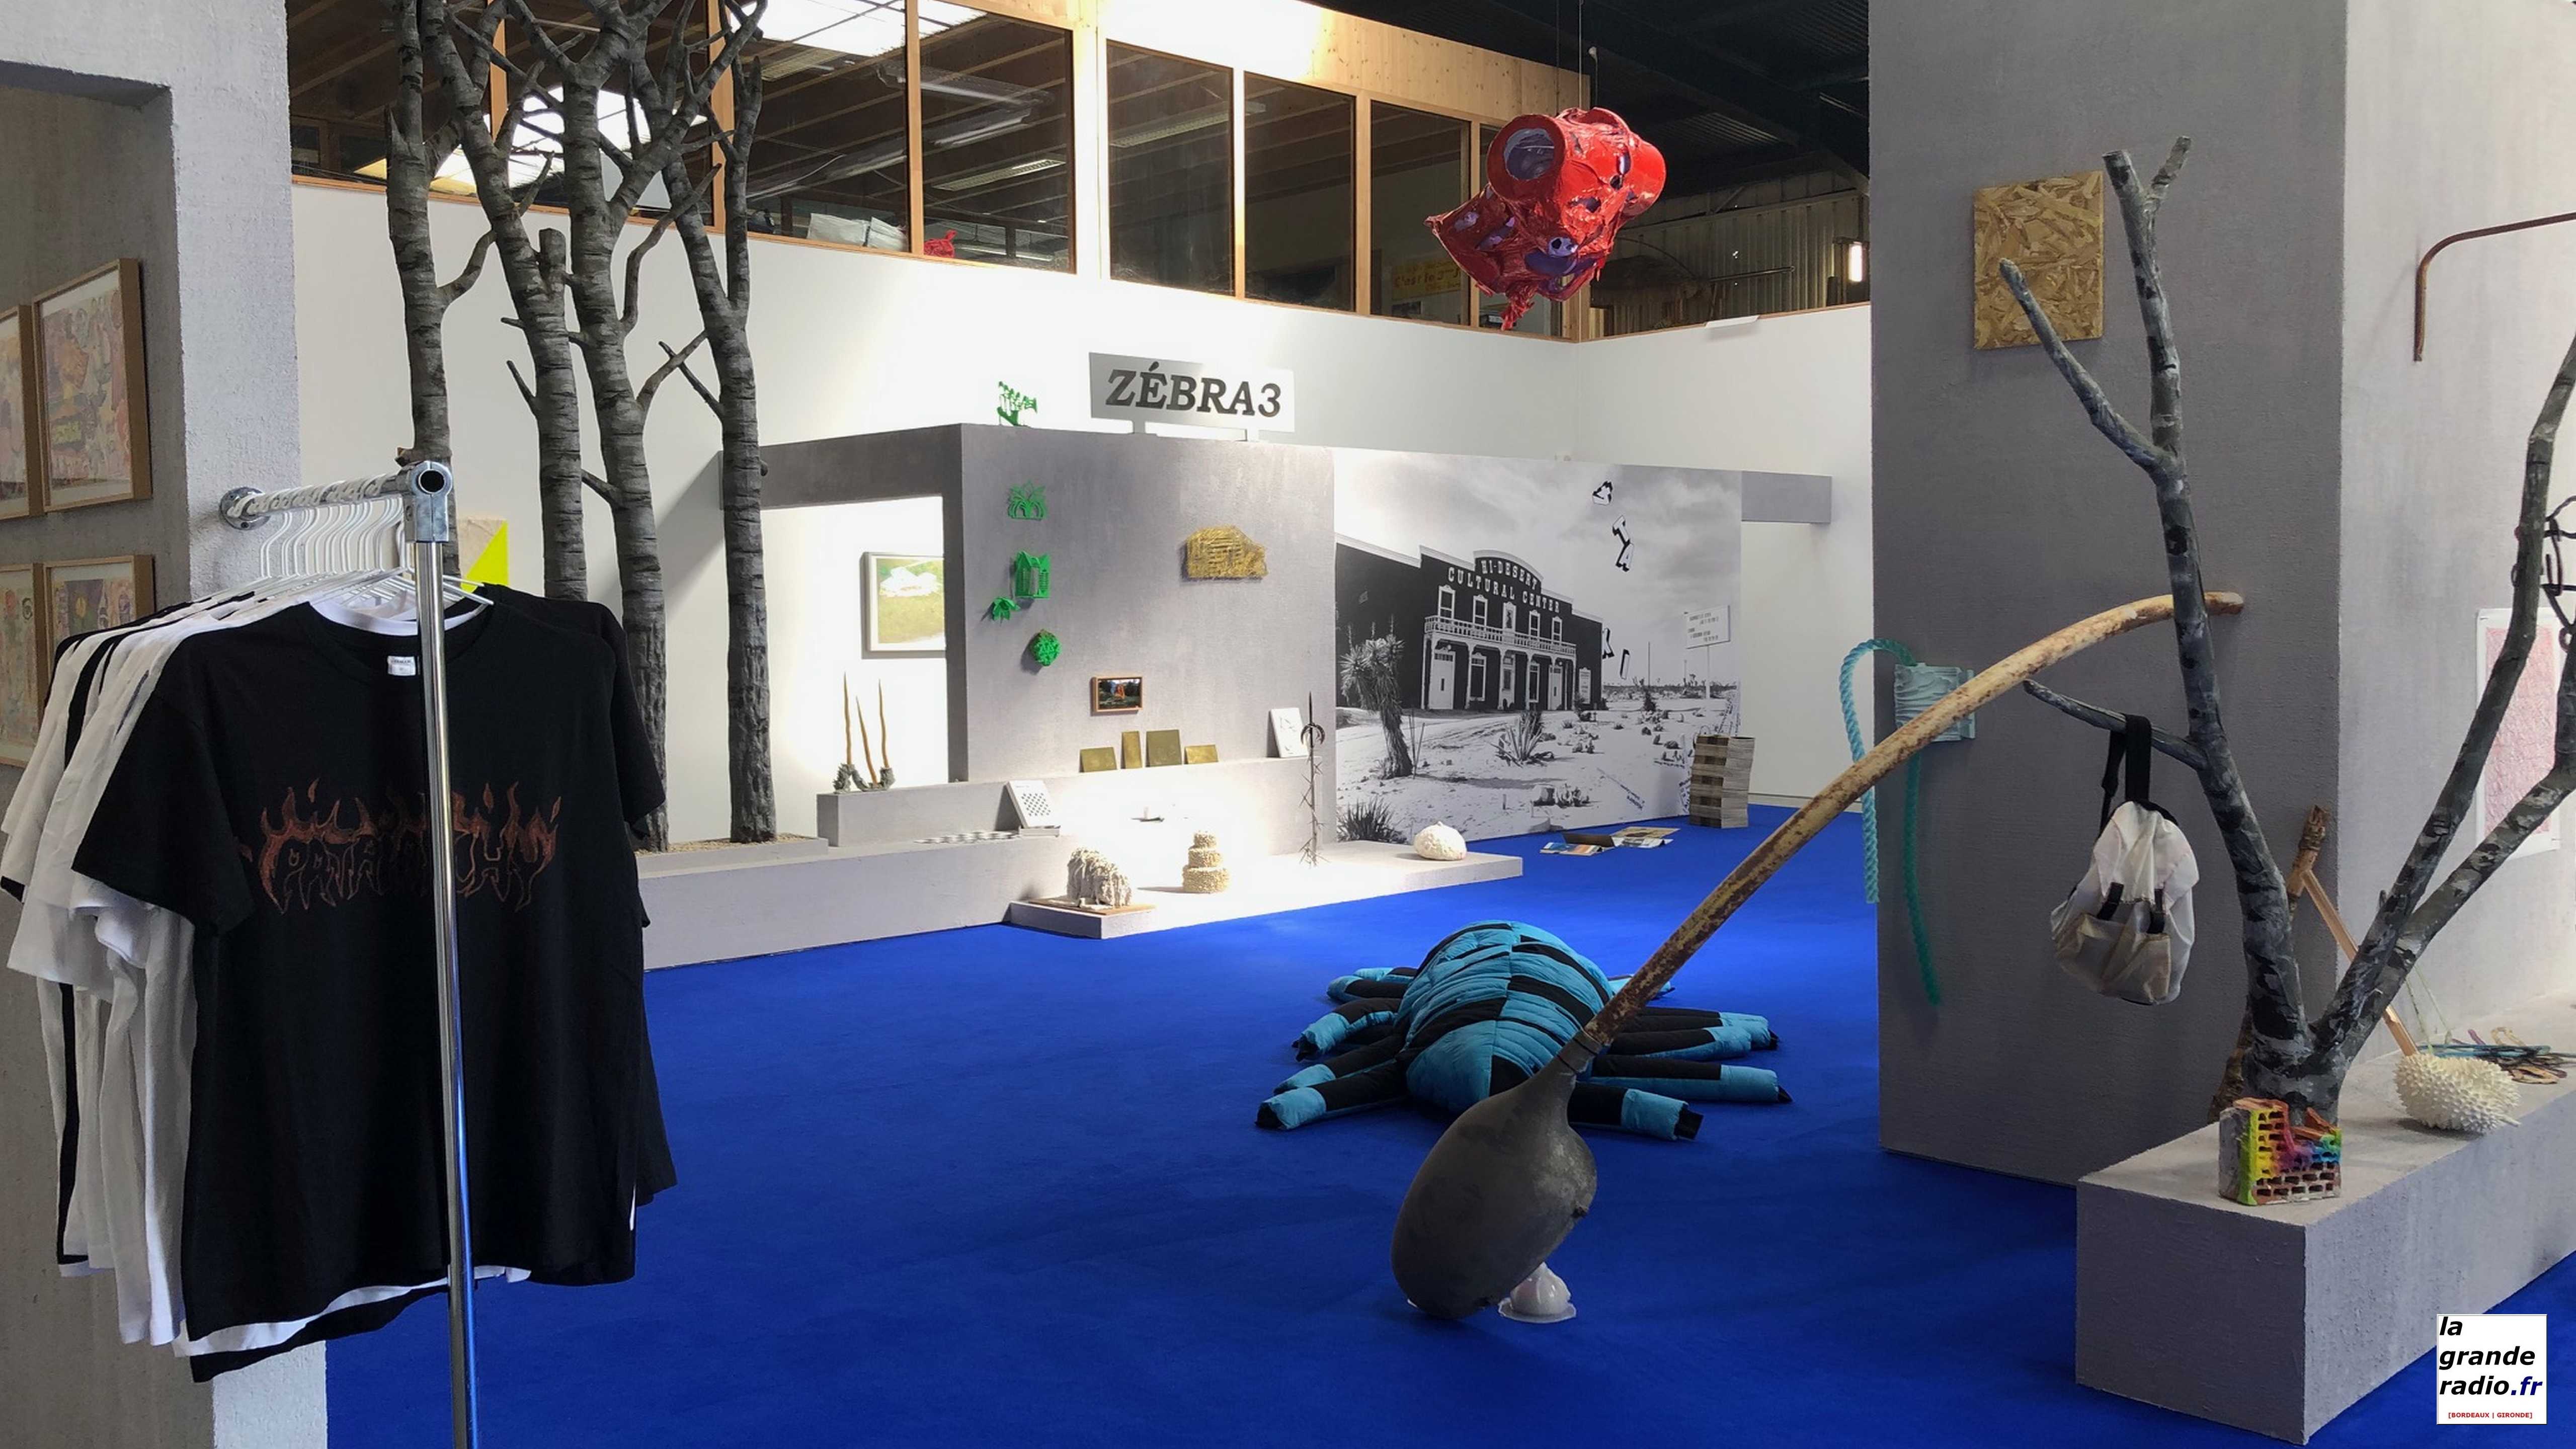 Bordeaux : "Diasporama", 30 ans de création collective avec l’exposition anniversaire de Zébra 3 à la Fabrique Pola